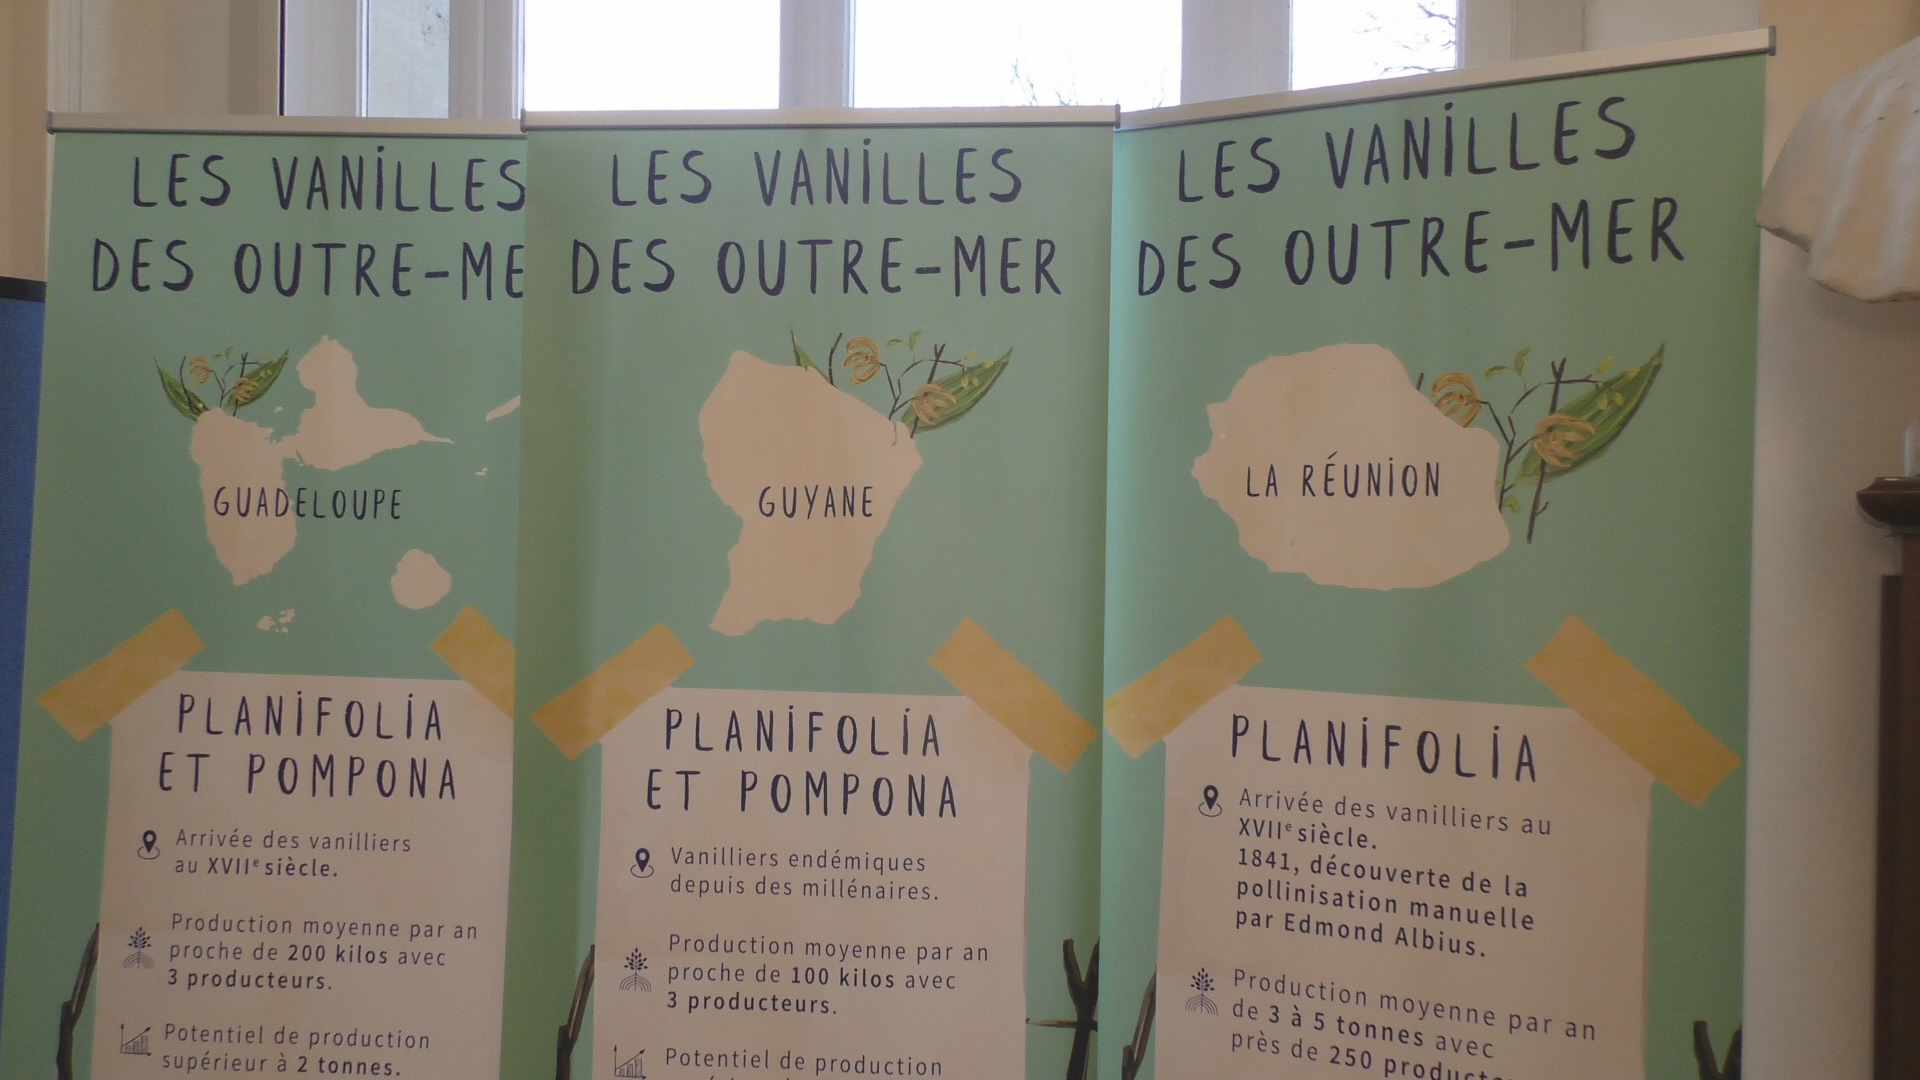 [Vidéo] ONEWS. Conférence à Paris sur les Vanilles d’Outre mer